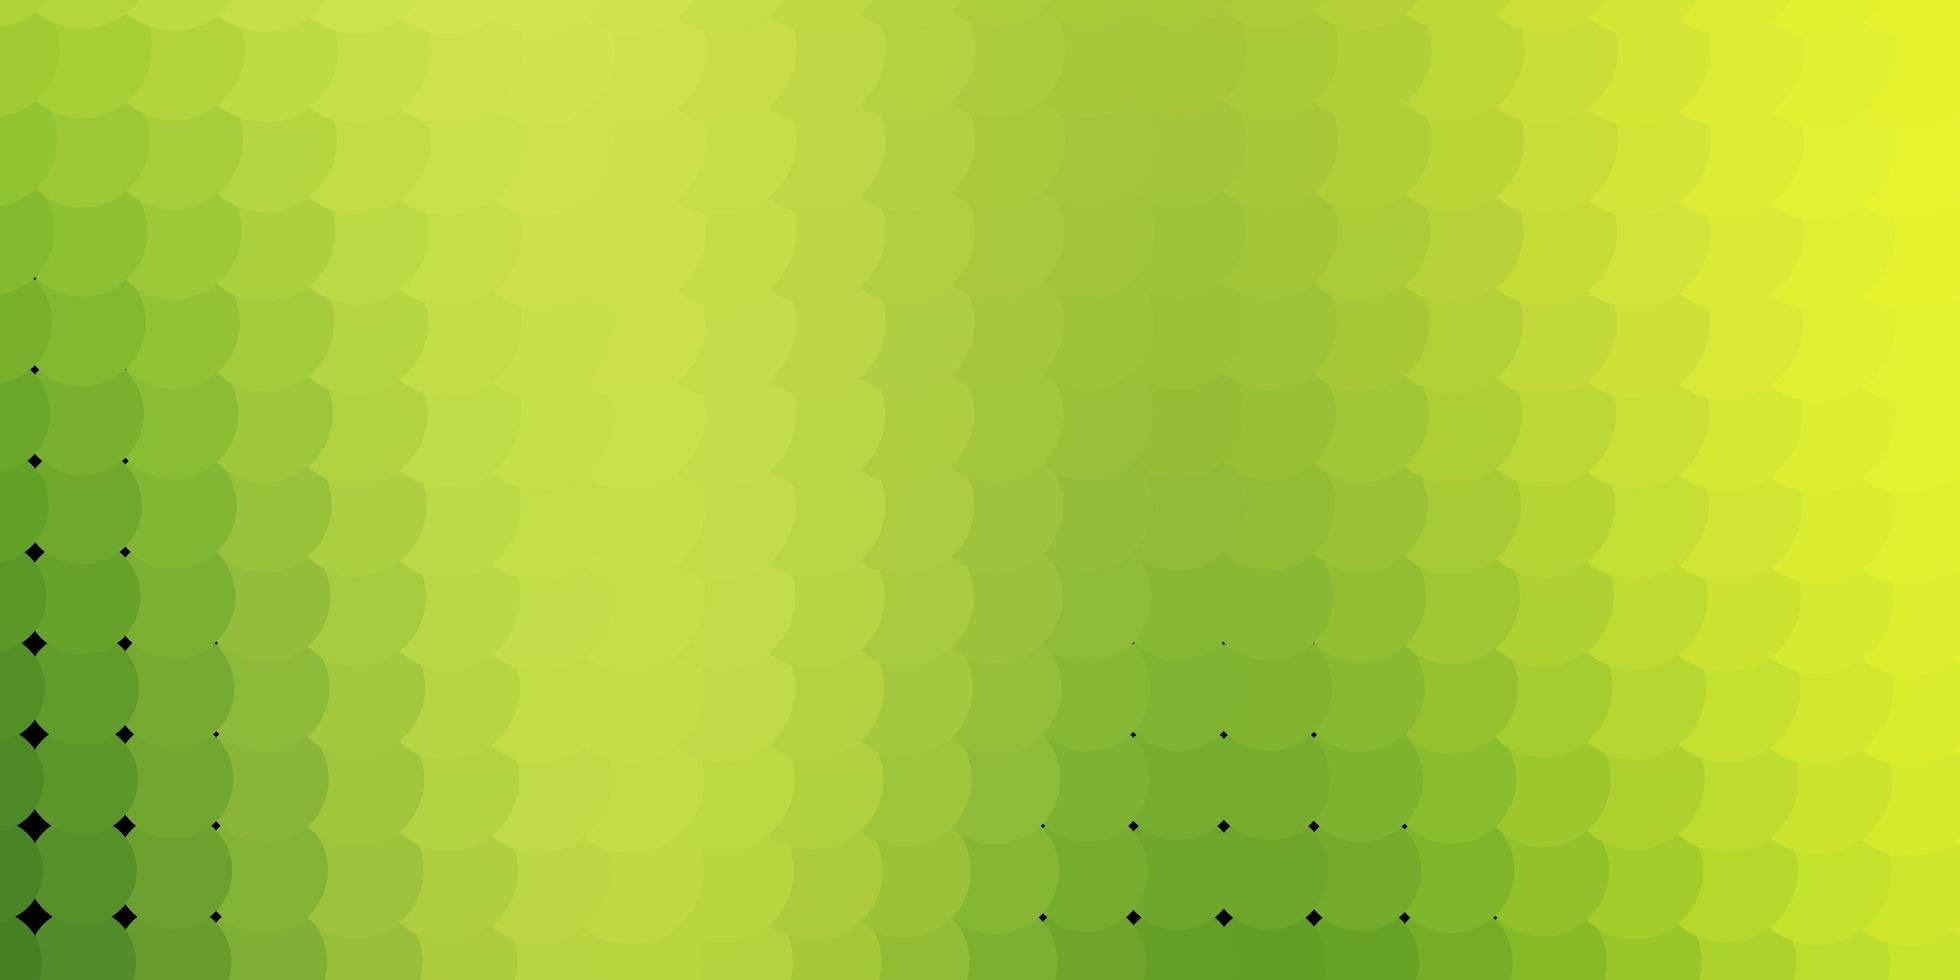 diseño de vector amarillo verde claro con círculos